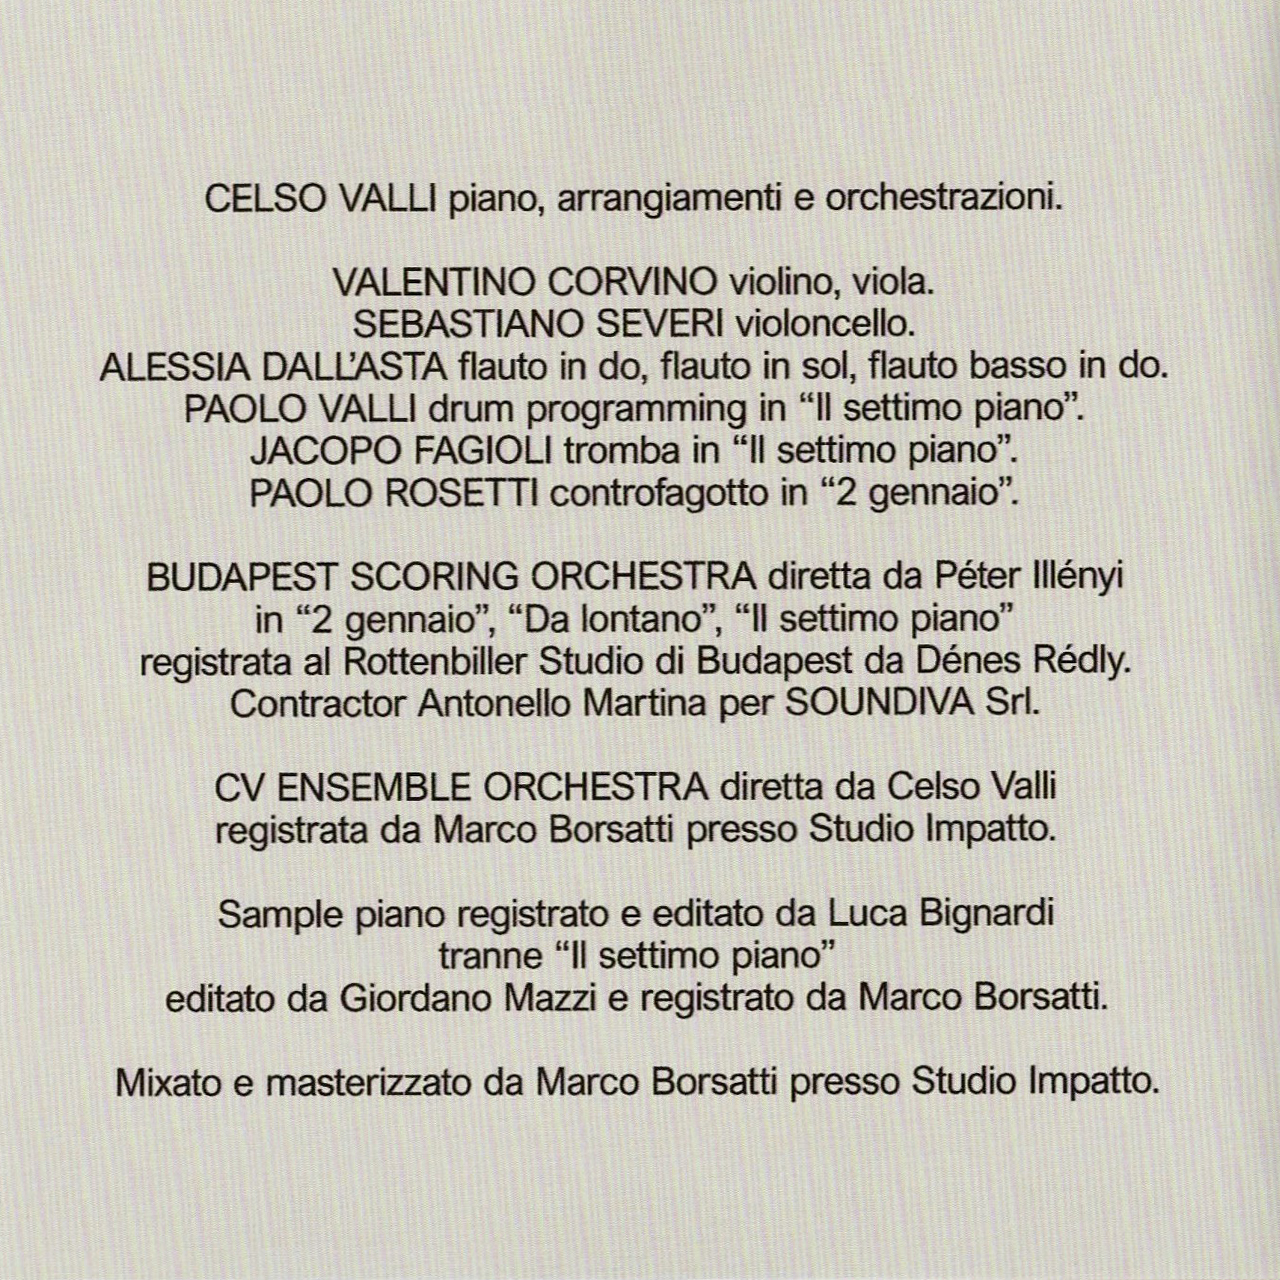 Sette Canzoni al Piano - Celso Valli | | Portfolio Giordano Mazzi | giordanomazzi.com